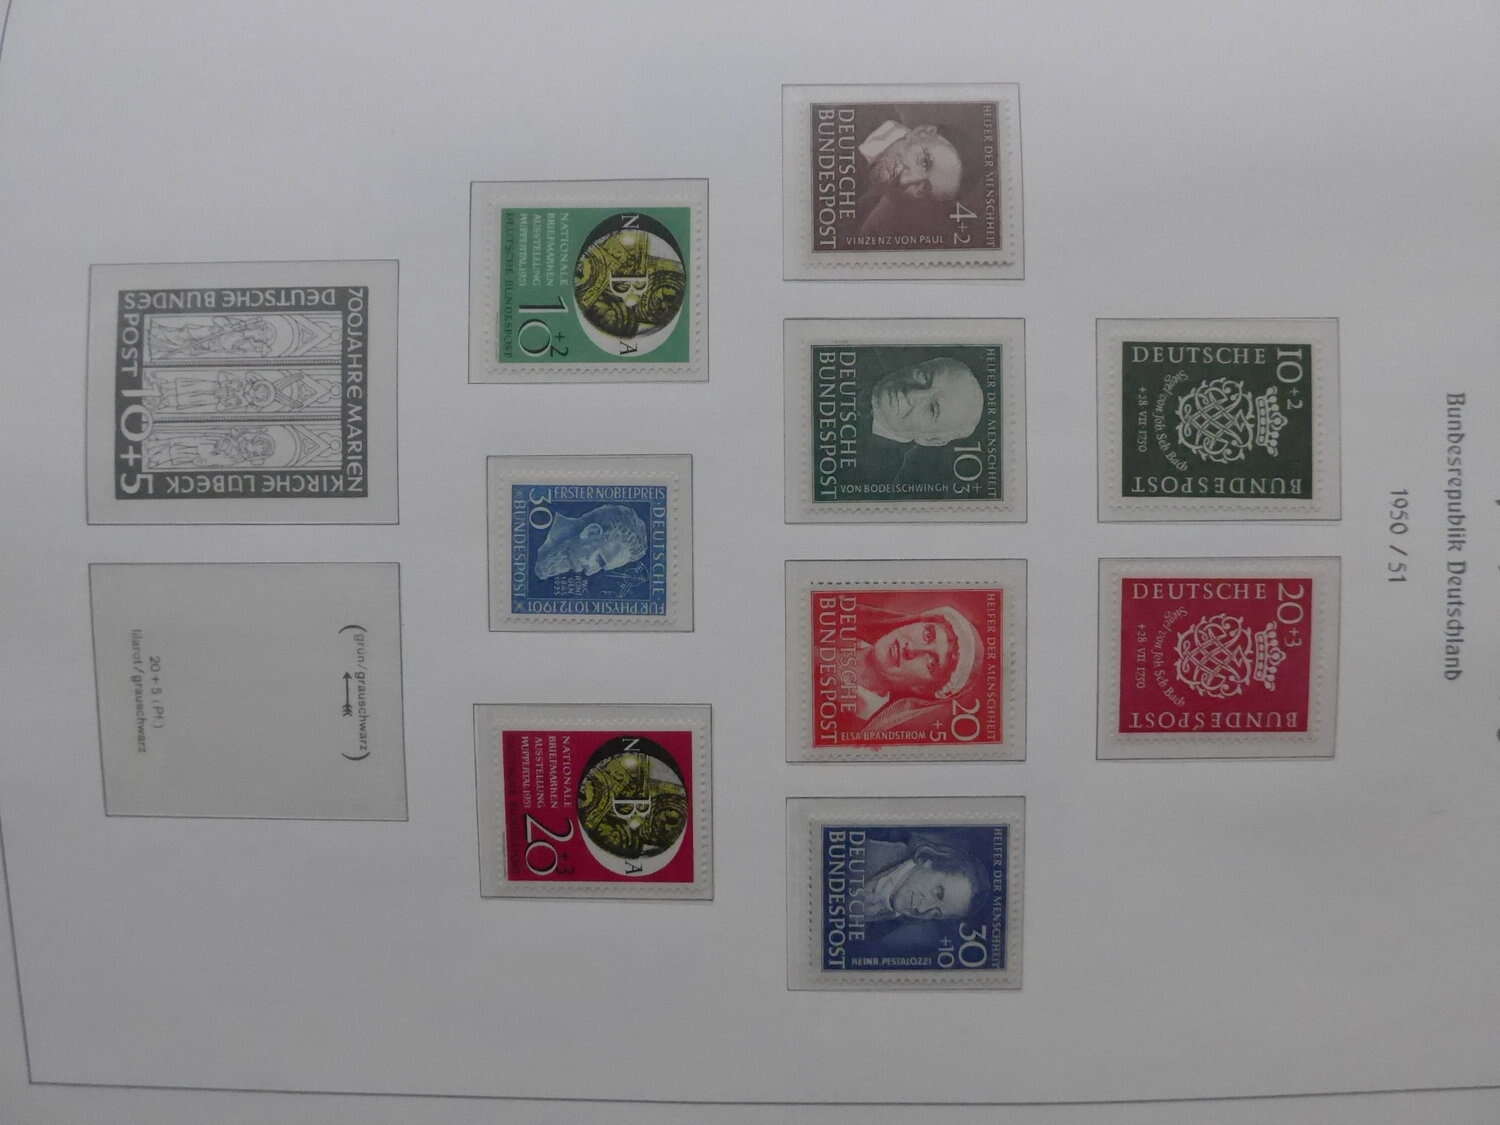 Lot 14 - sammlungen und posten sammlernachlässe -  Deutsche Briefmarken AG 6th Large Lot Auction Deutsche Briefmarken AG